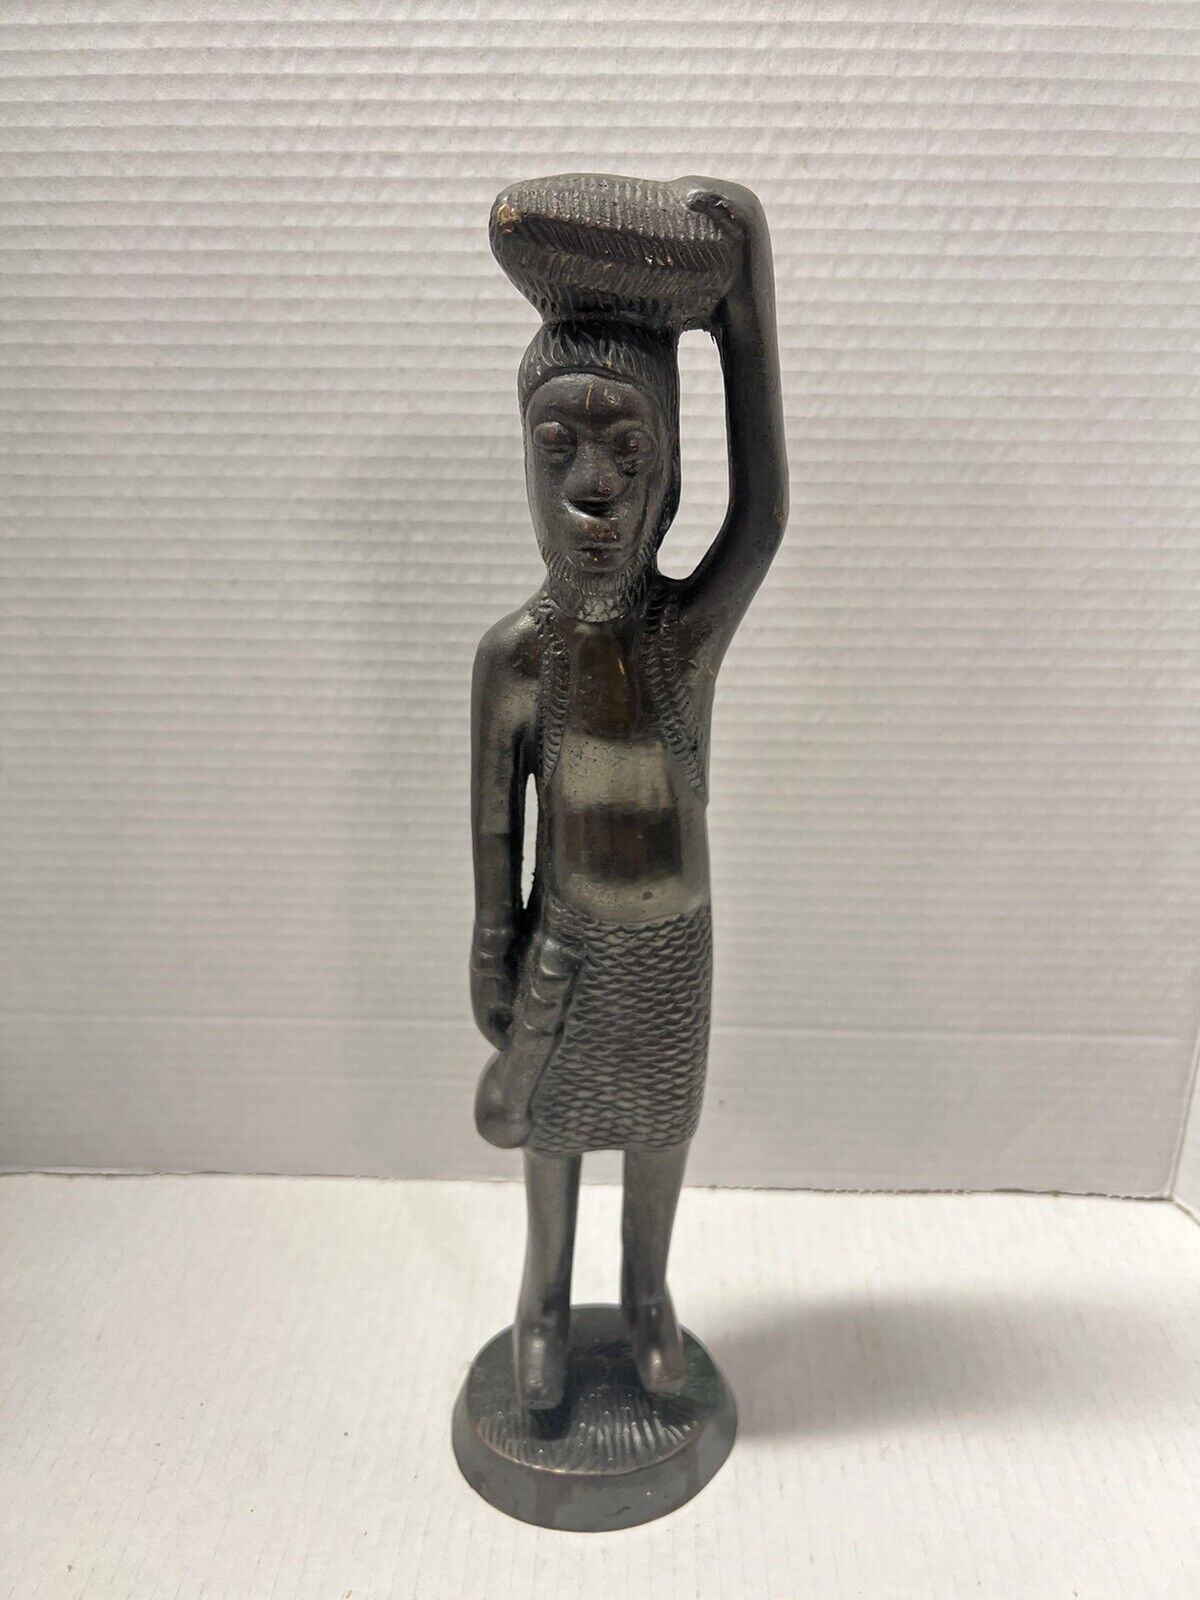 Vintage African Art Bronze Figurine Sculpture Tribal 14” Rustic